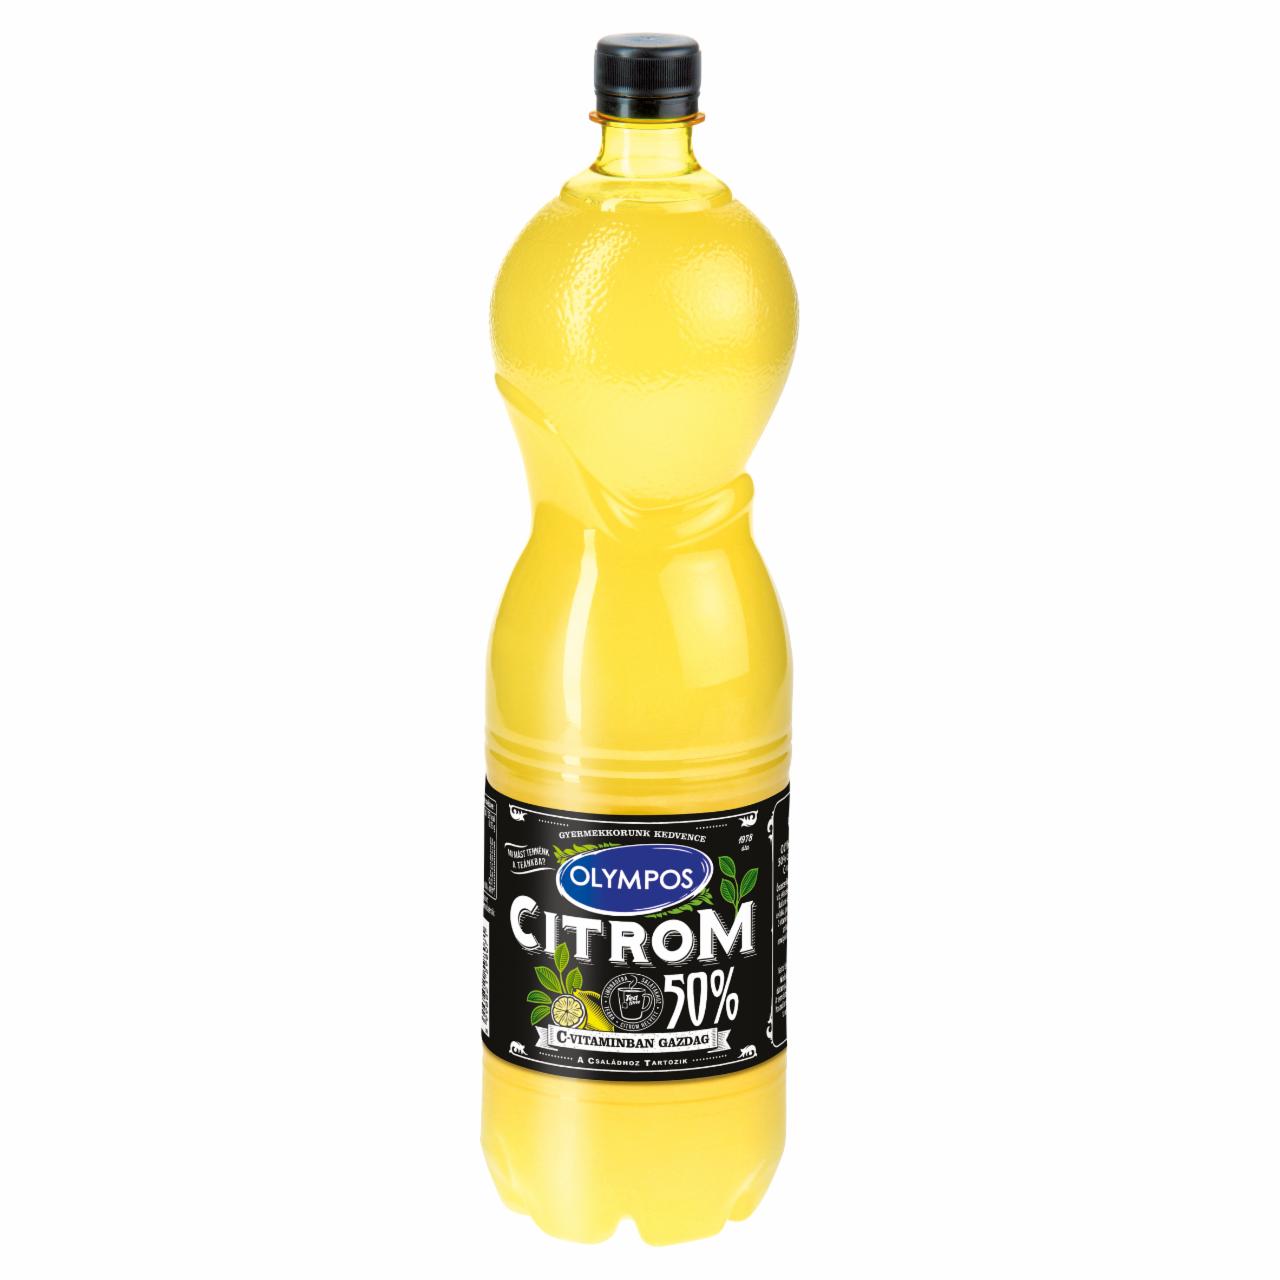 Képek - Olympos citrom ízesítő 50% citromlé tartalommal 1,5 l